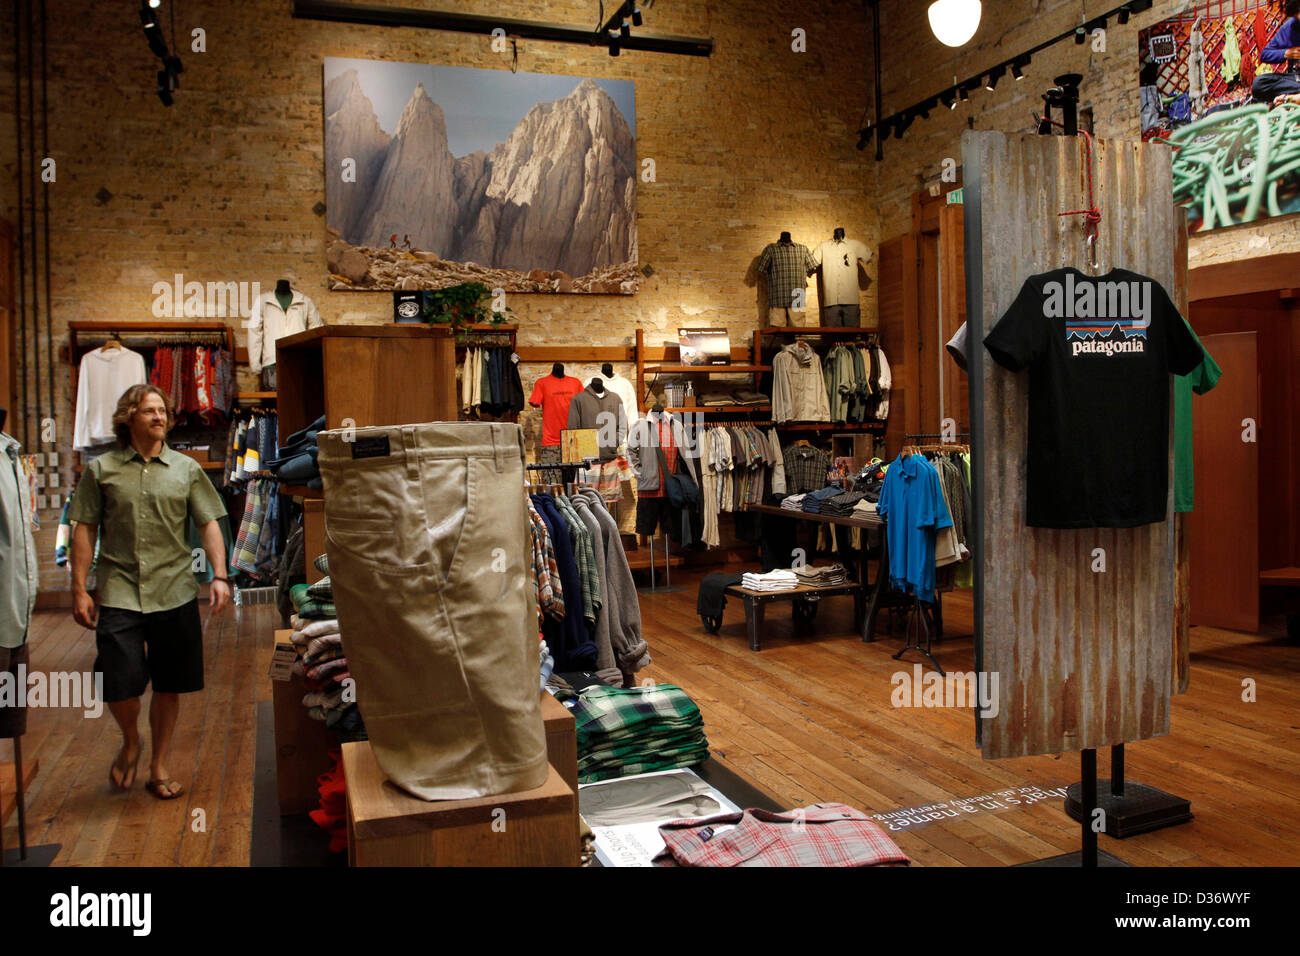 Jun 08, 2012 Ventura, California, EE.UU. - La tienda minorista en la Patagonia. Patagonia produce alta gama de ropa exterior, ropa de surf, tablas de surf de fabricación es miembro